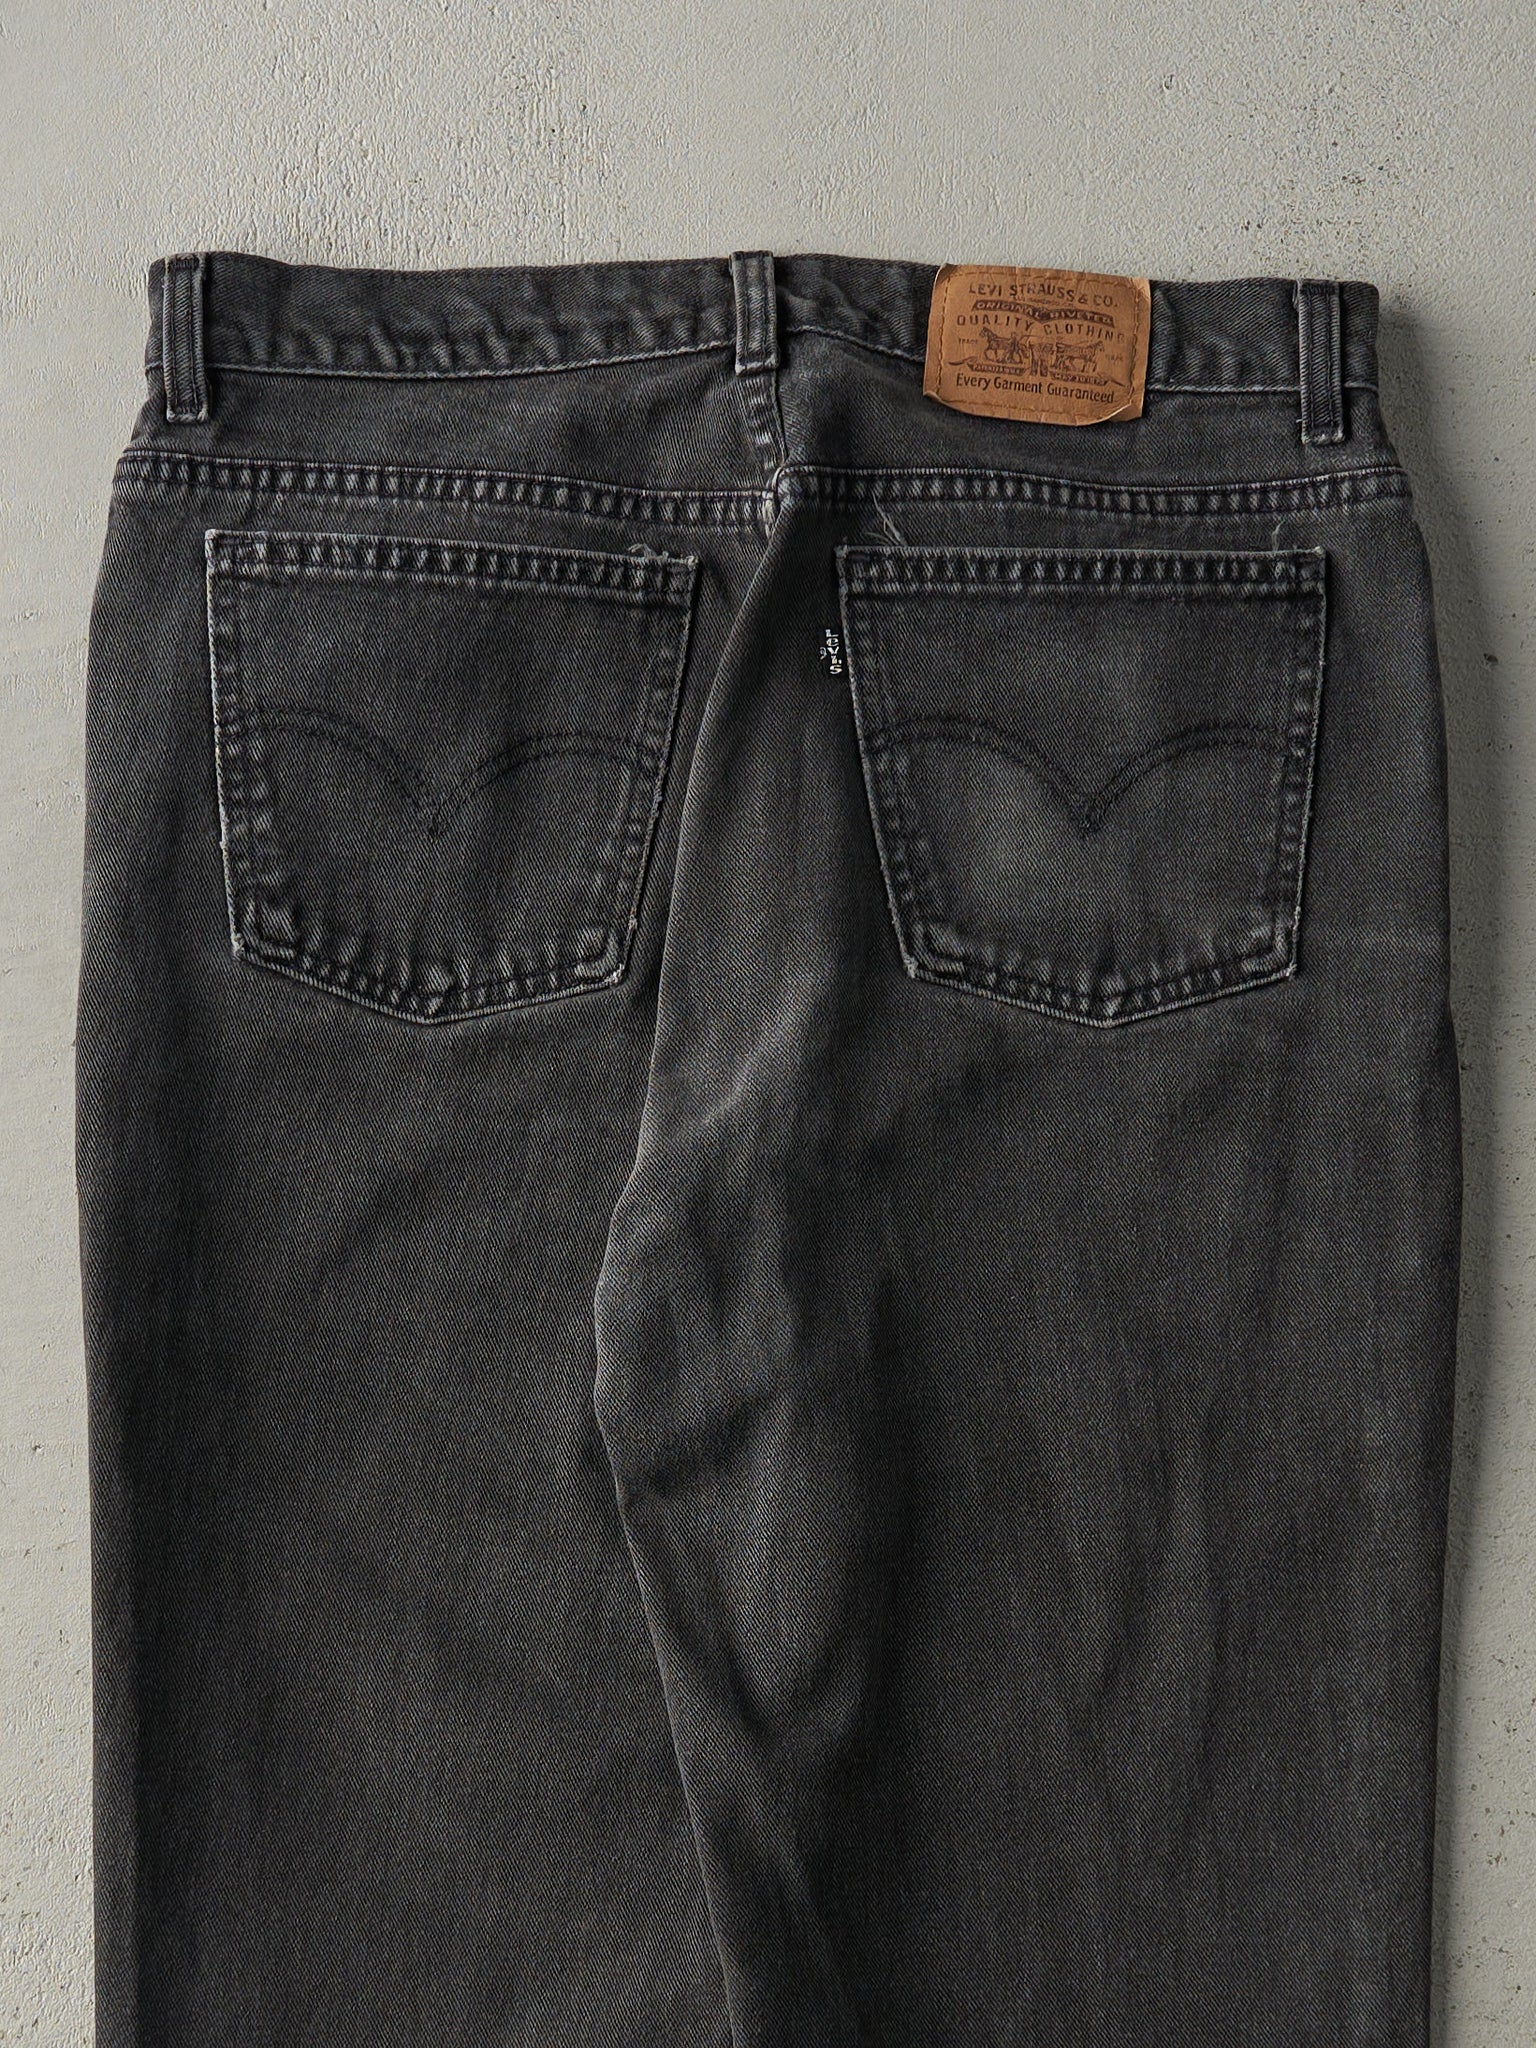 Vintage 90s Black Levi's Denim Pants (32x29)